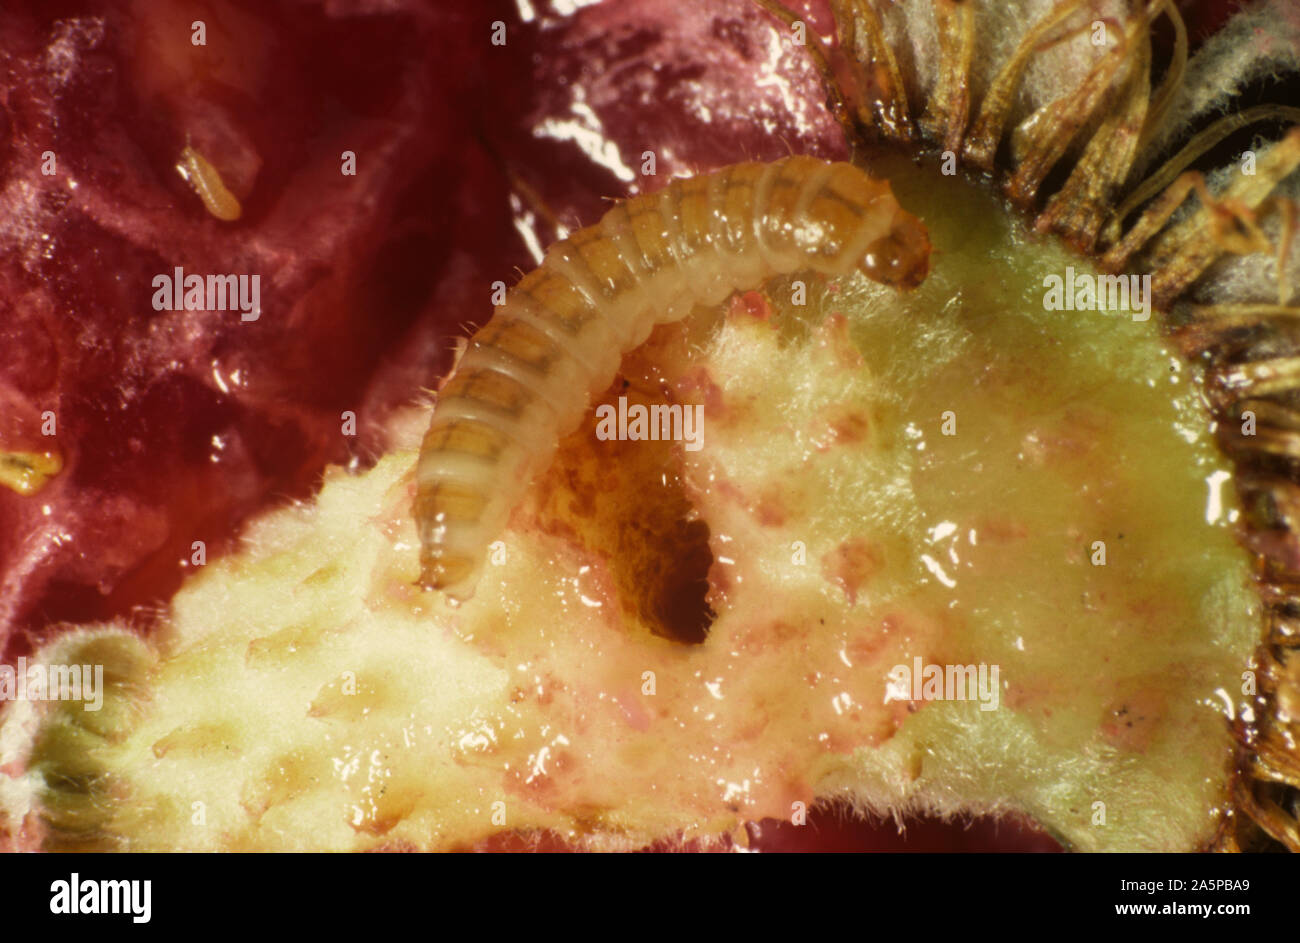 Himbeere Käfer (Byturus Tomentosus) Larve, grub in beschädigten raspebbery Obst Stockfoto